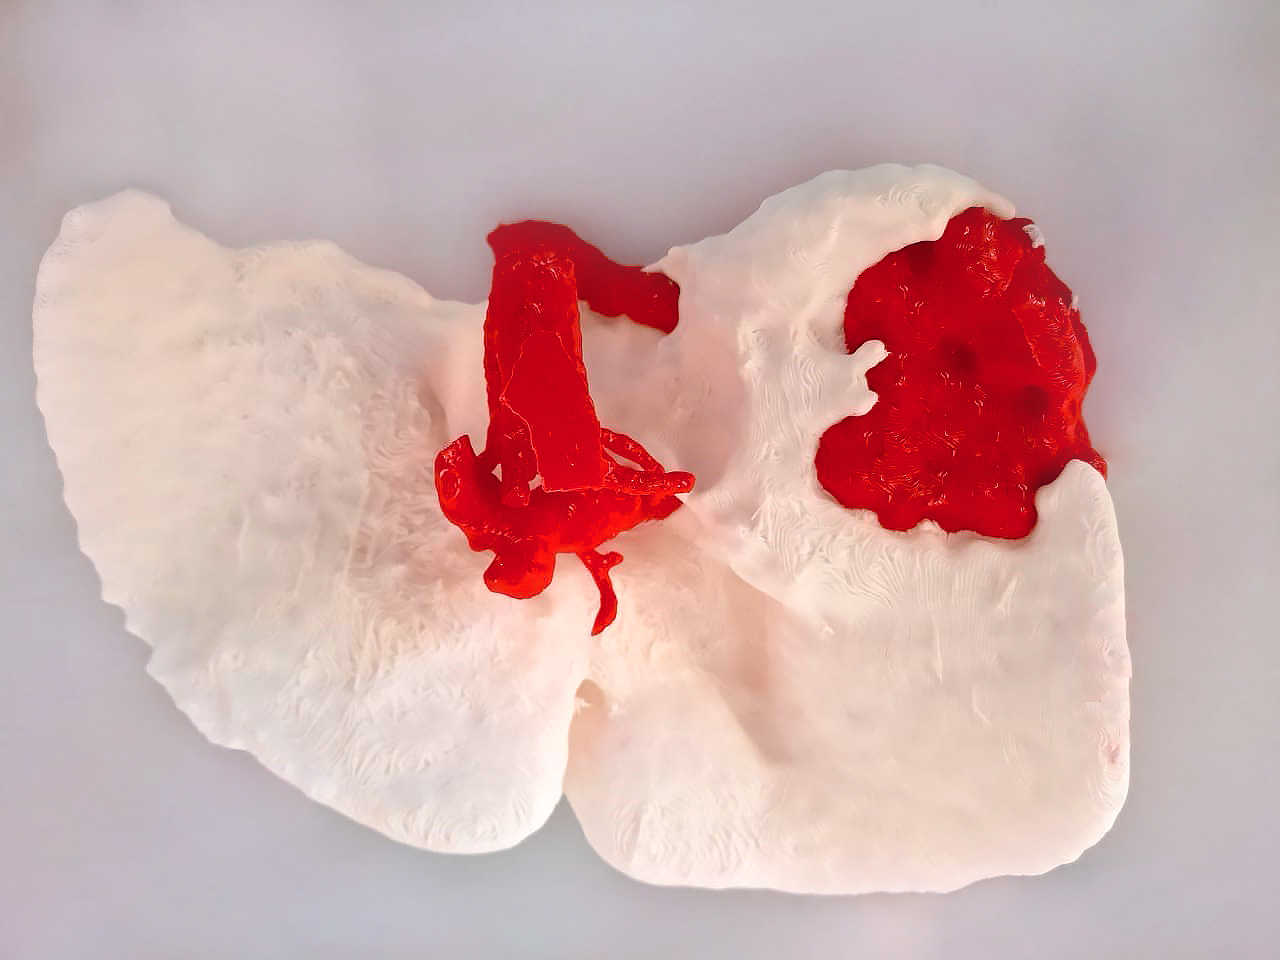 3D Liver Biomodel Back